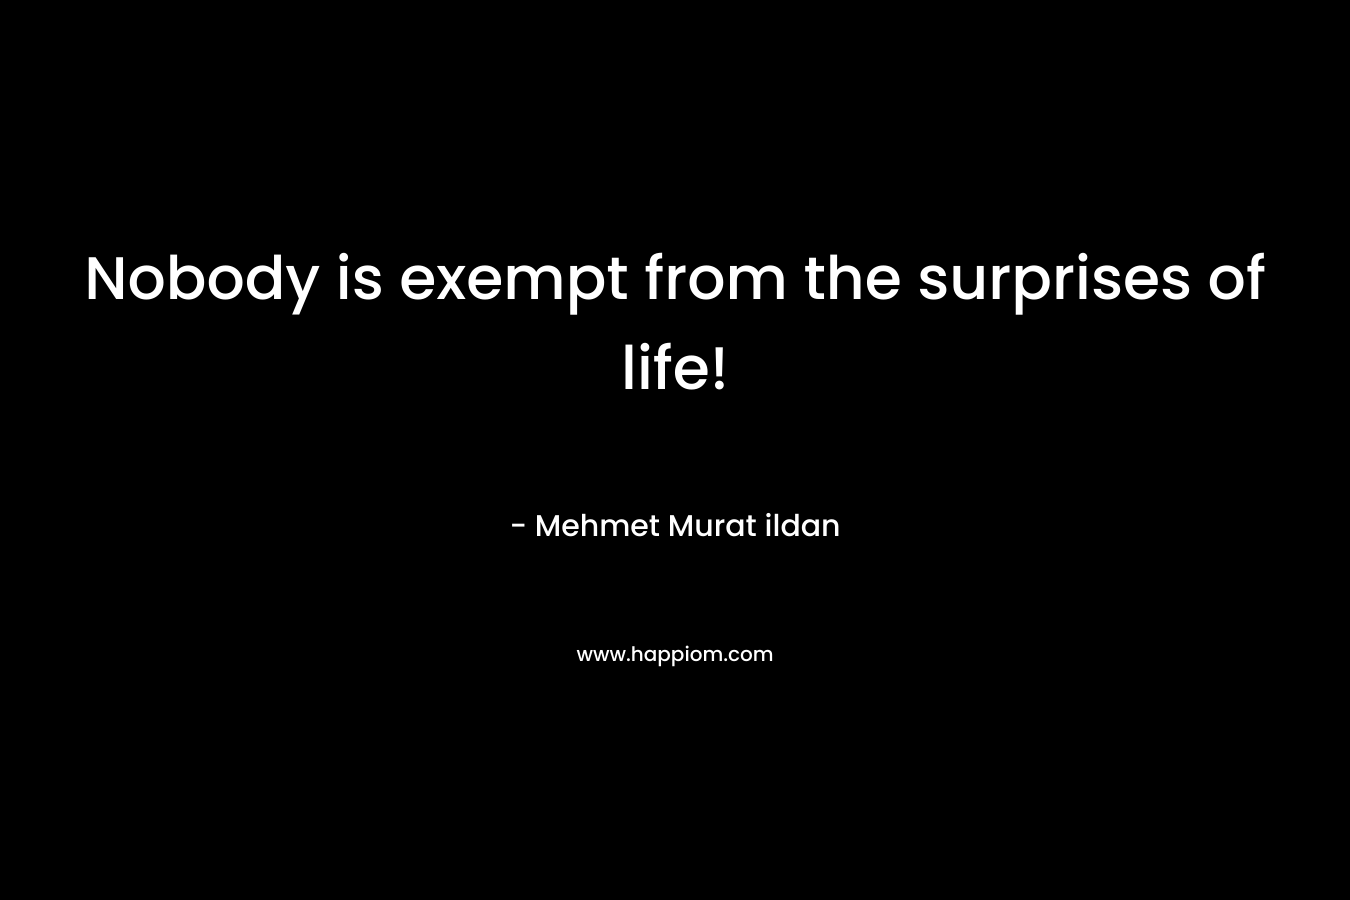 Nobody is exempt from the surprises of life! – Mehmet Murat ildan